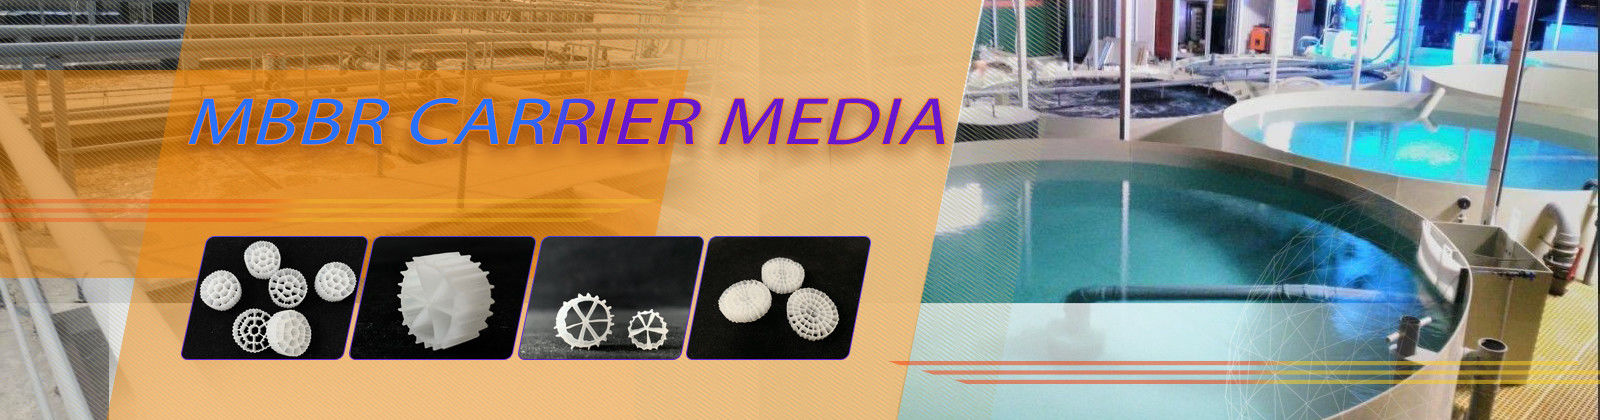 Mbbr Filter Media